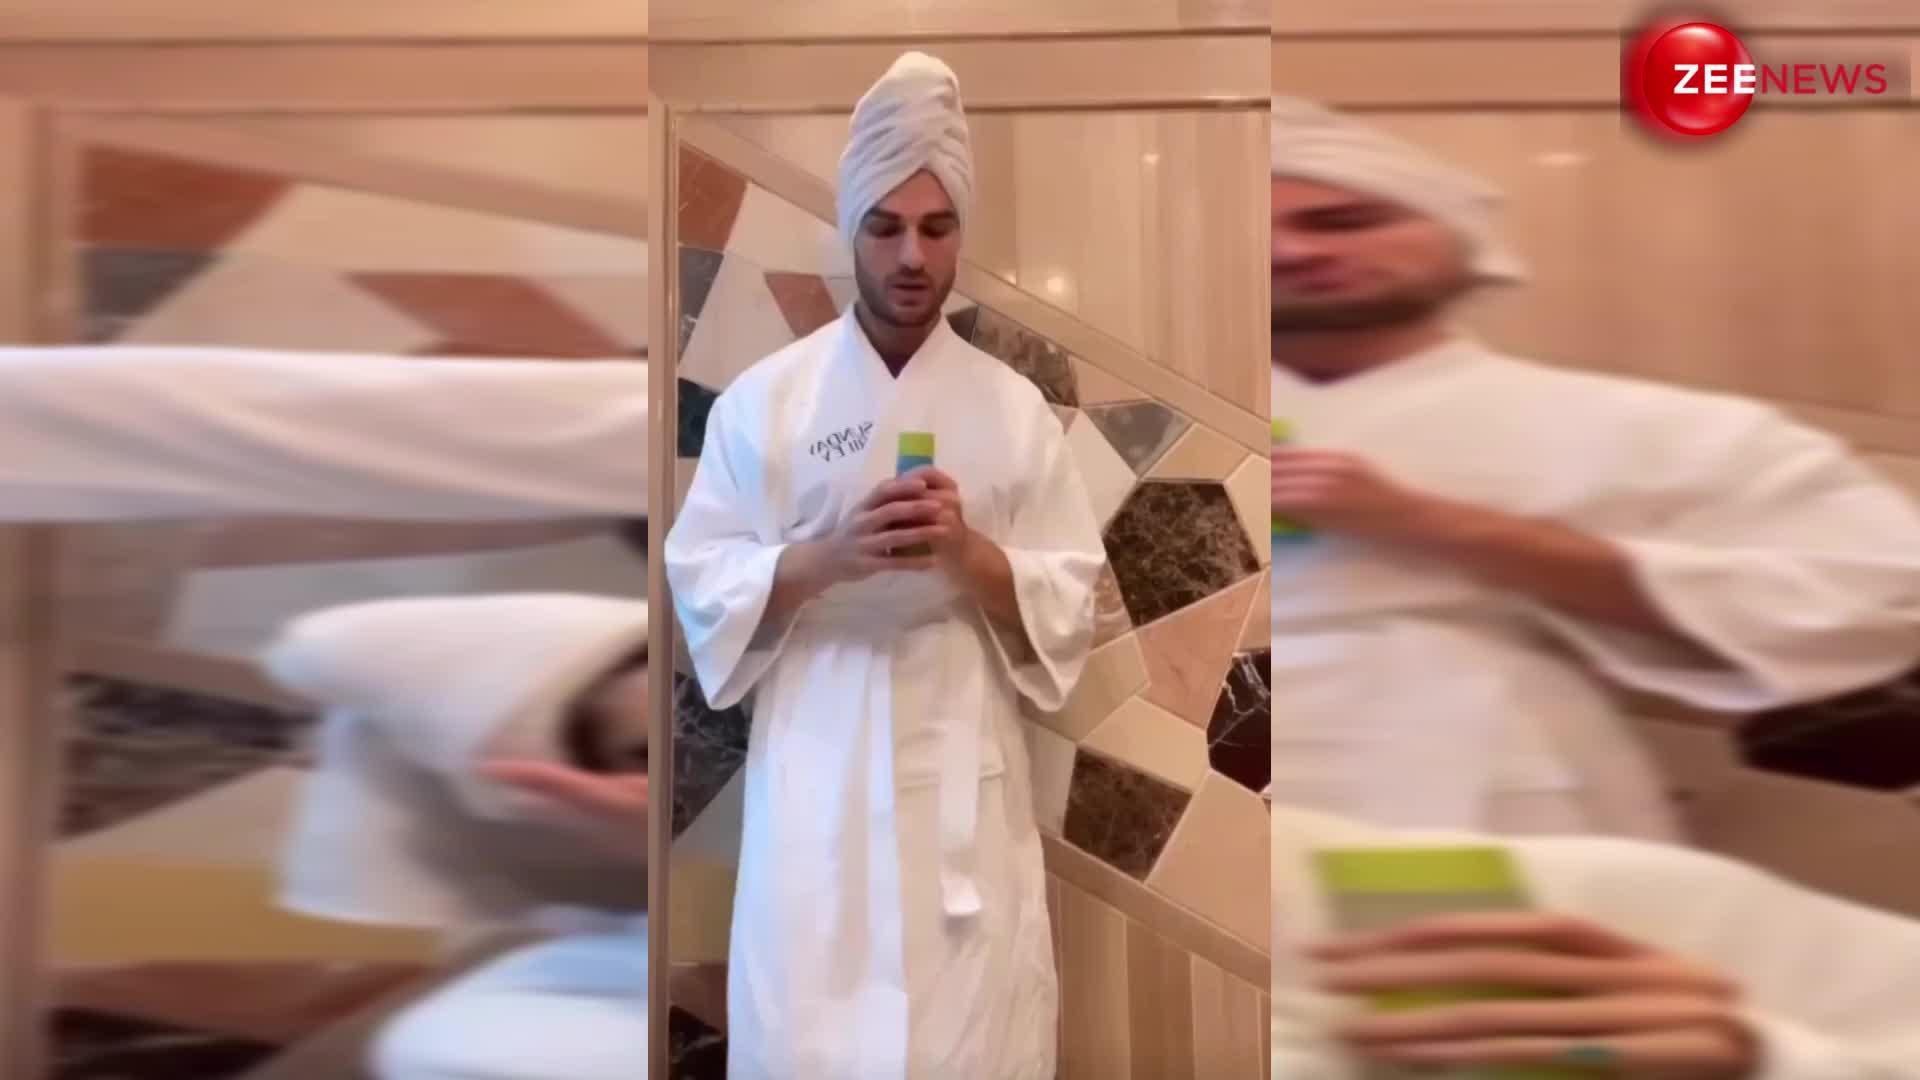 वायरल टॉवल वीडियो !  Disha Patani ने सिर्फ बाथरोब लपेट अपने दोस्त के साथ अकेले बना डाला ऐसा वीडियो, देख पापा को आया गुस्सा